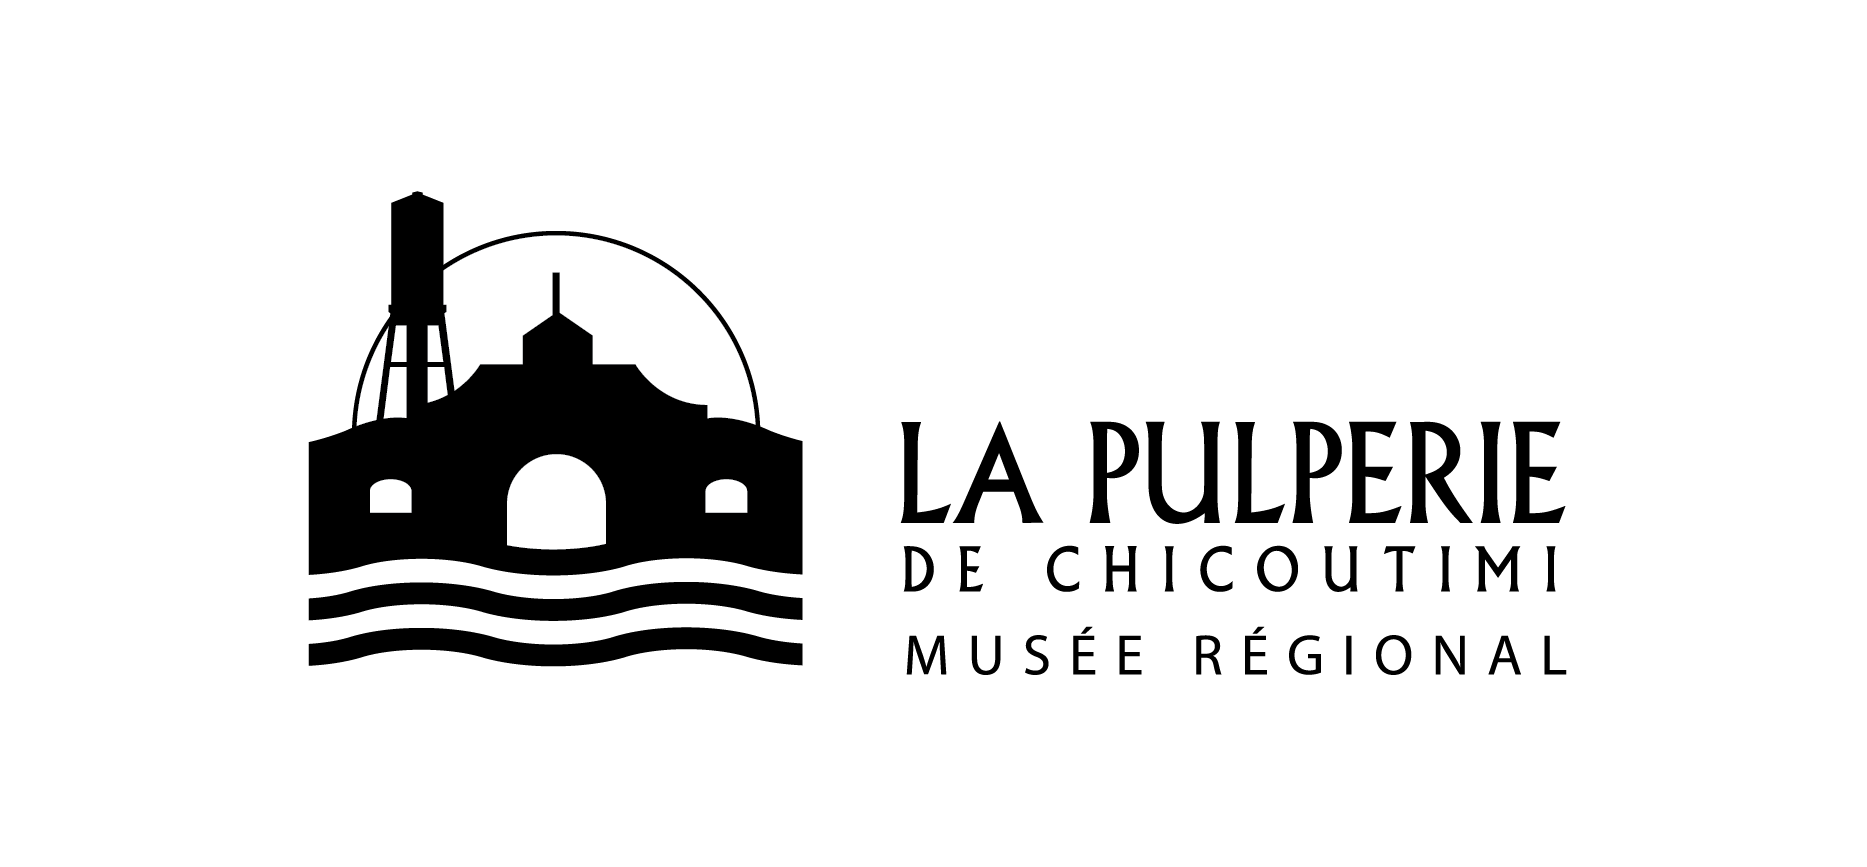 La Pulperie – Musée régional